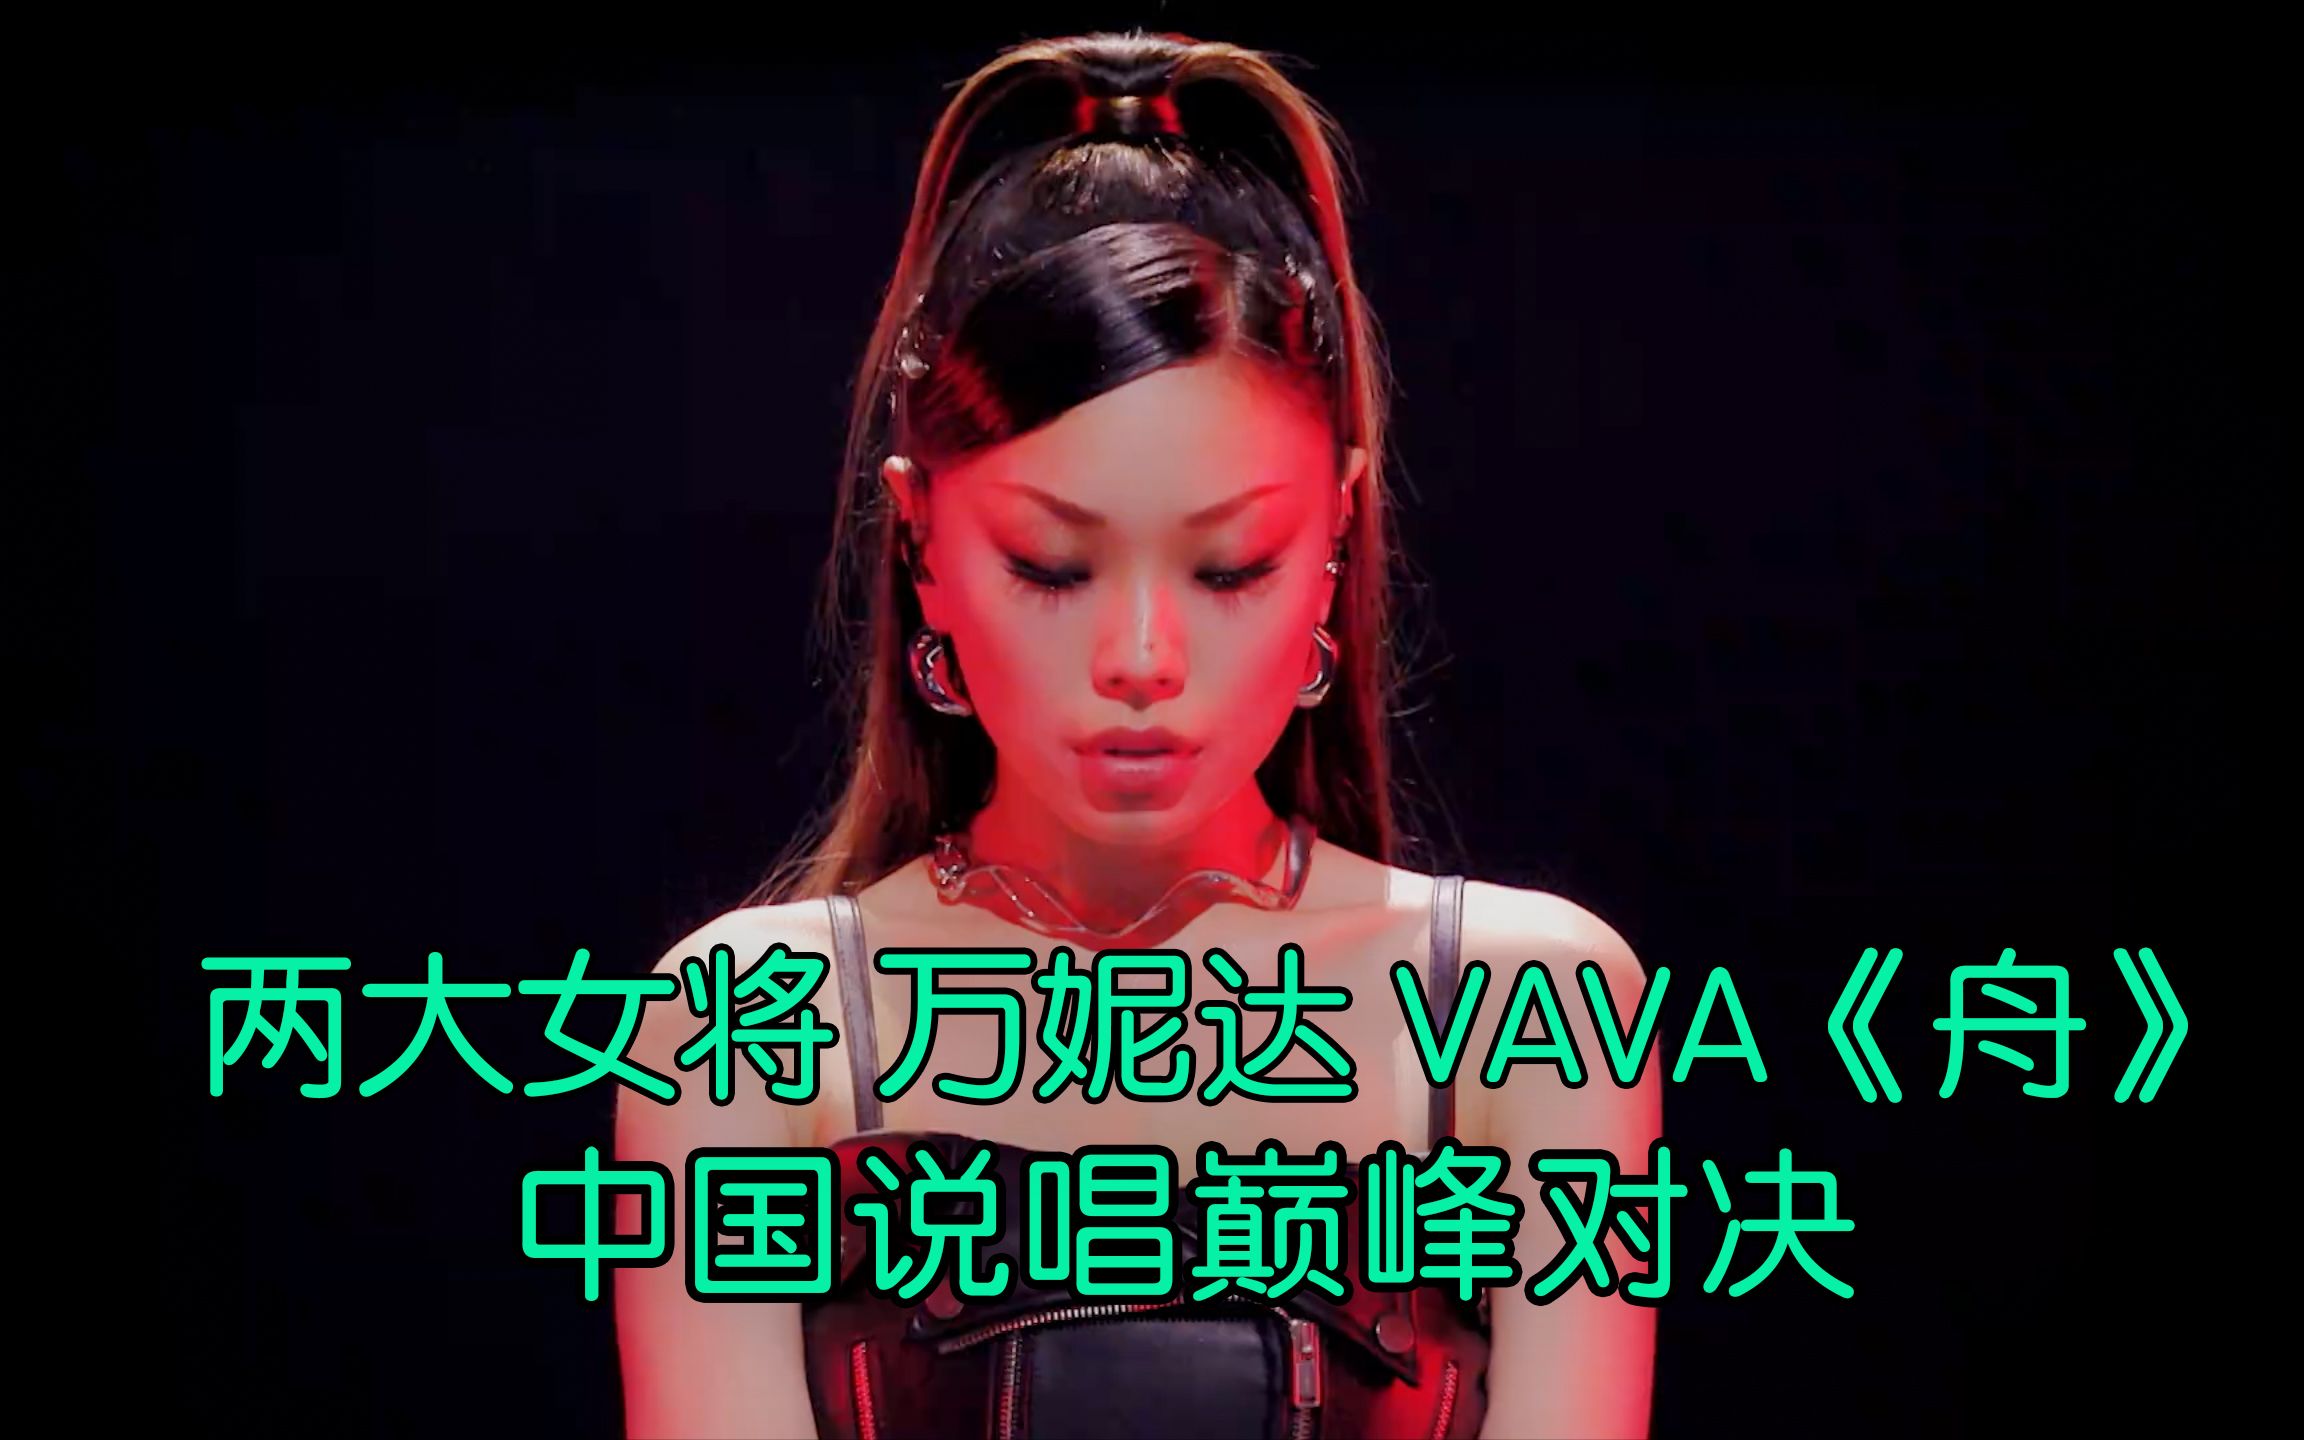 中国第一女rapper合体! 万妮达 VAVA《舟》